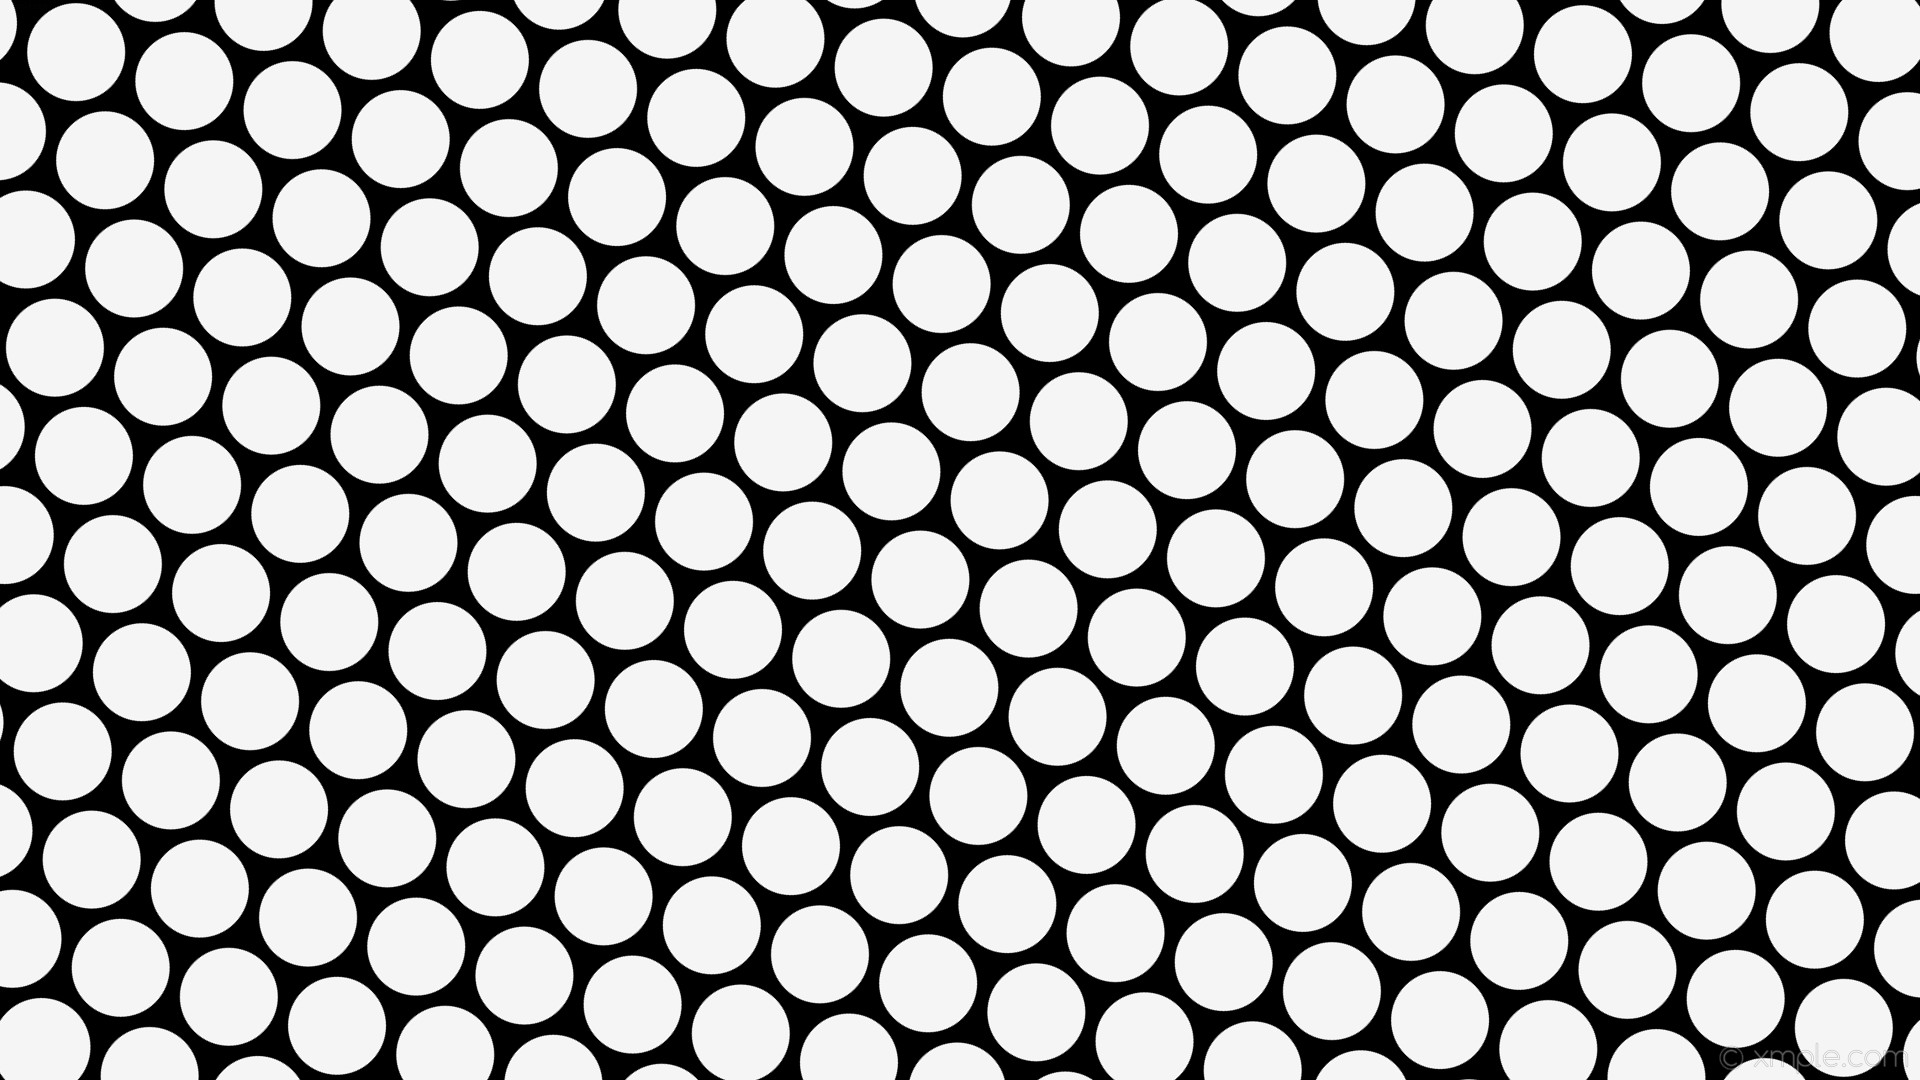 1920x1080 wallpaper hexagon black white polka dots white smoke #000000 #f5f5f5  diagonal 45Â° 98px